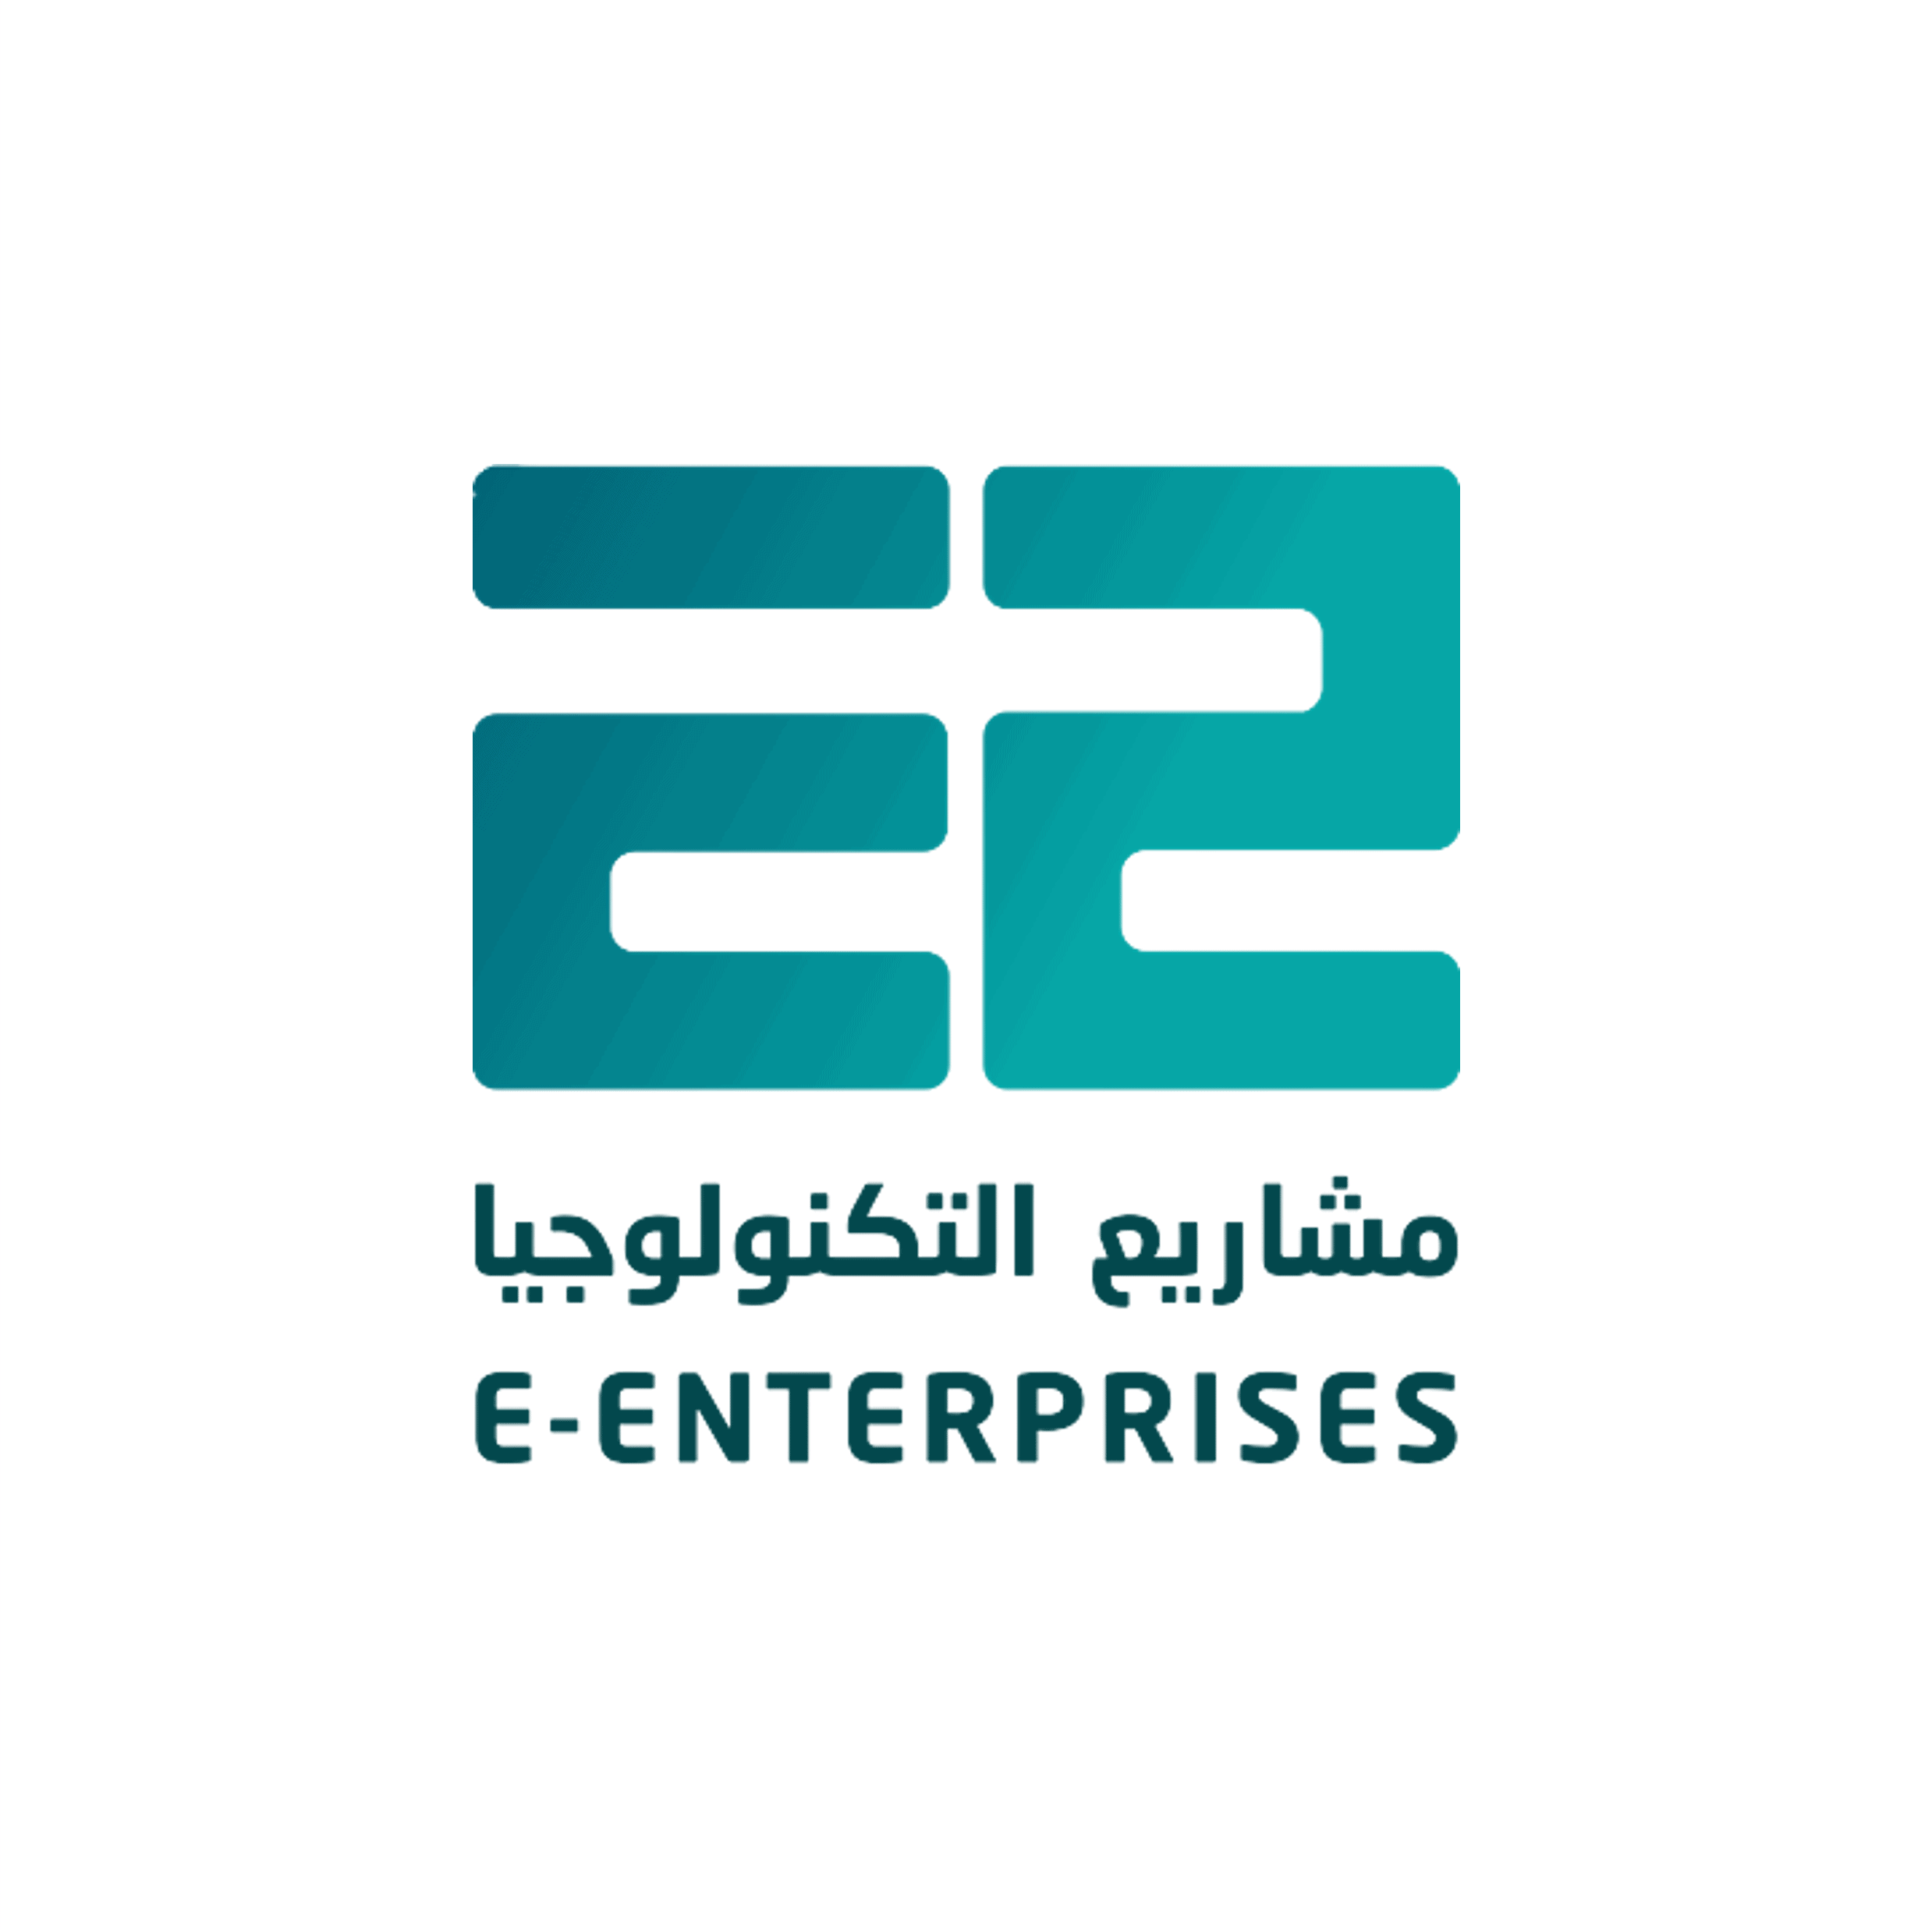 E2 new logo